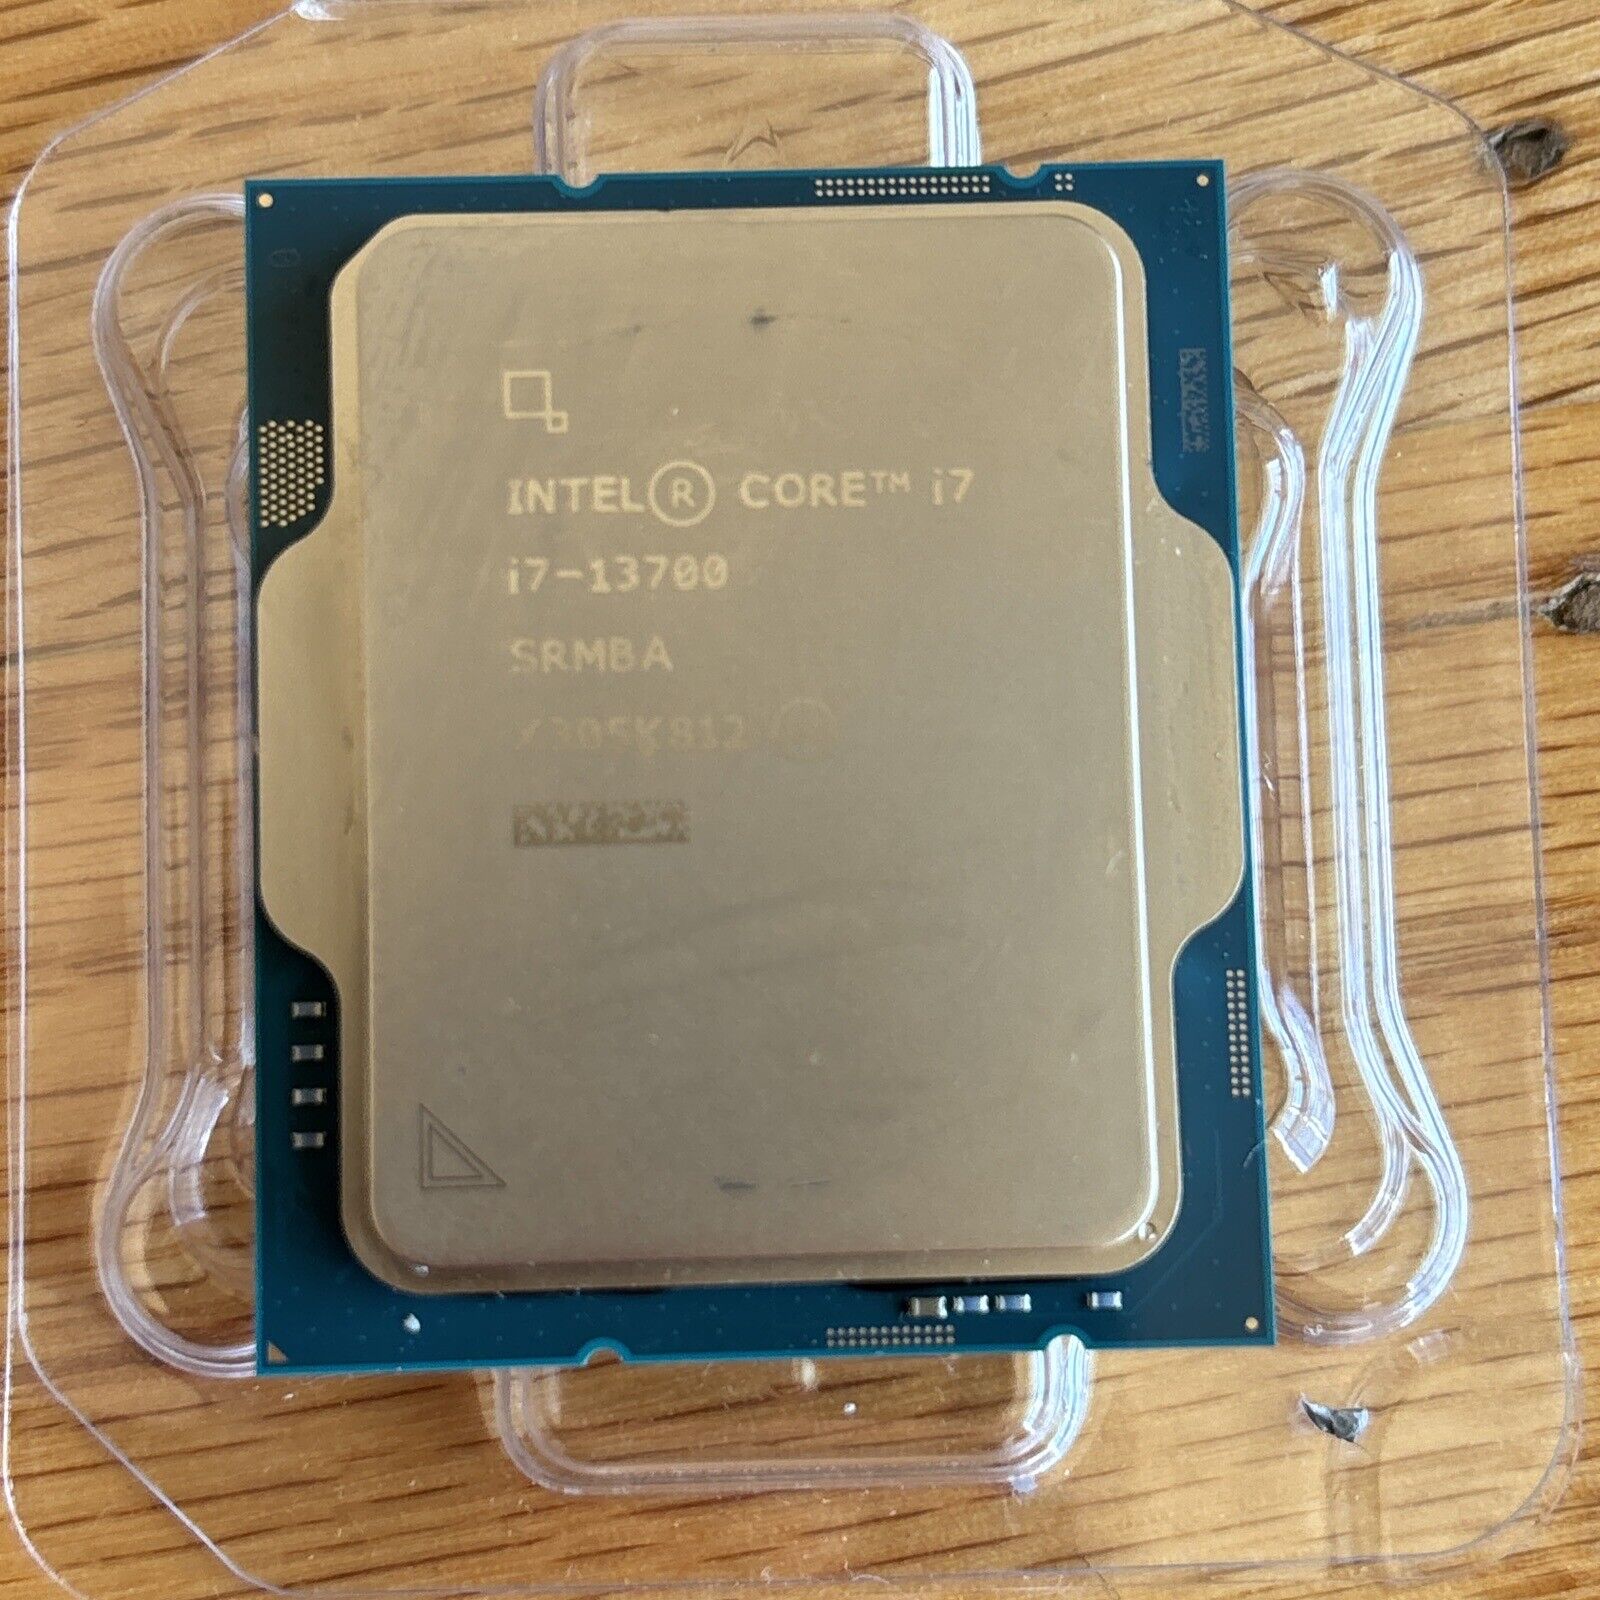 Intel Core i7-13700 Processor (2.10GHz, 16 Cores, LGA 1700)